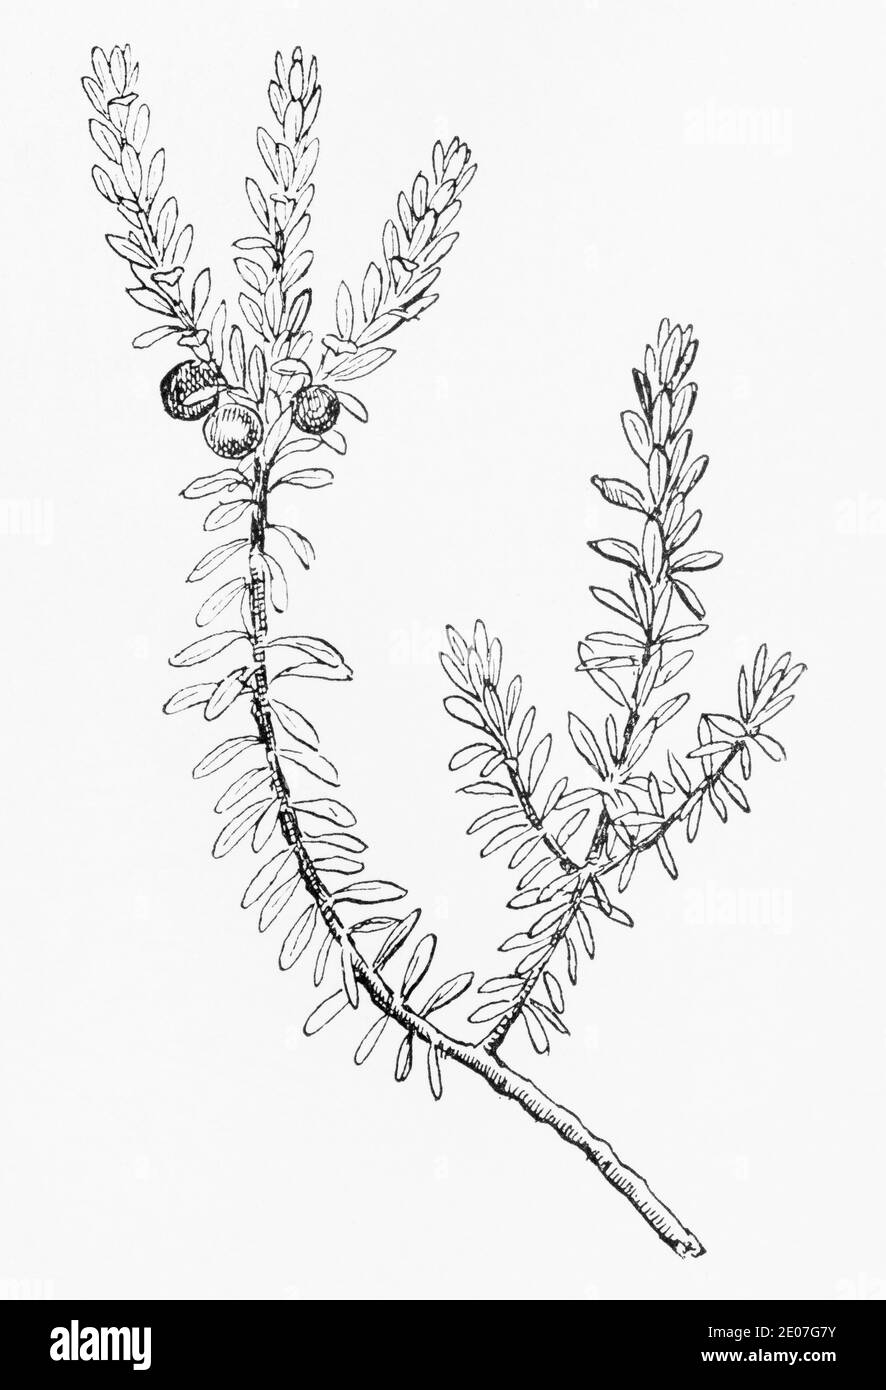 Alte botanische Illustration Gravur von Crowberry / Empetrum nigrum. Traditionelle Heilkräuter Pflanze. Siehe Hinweise Stockfoto